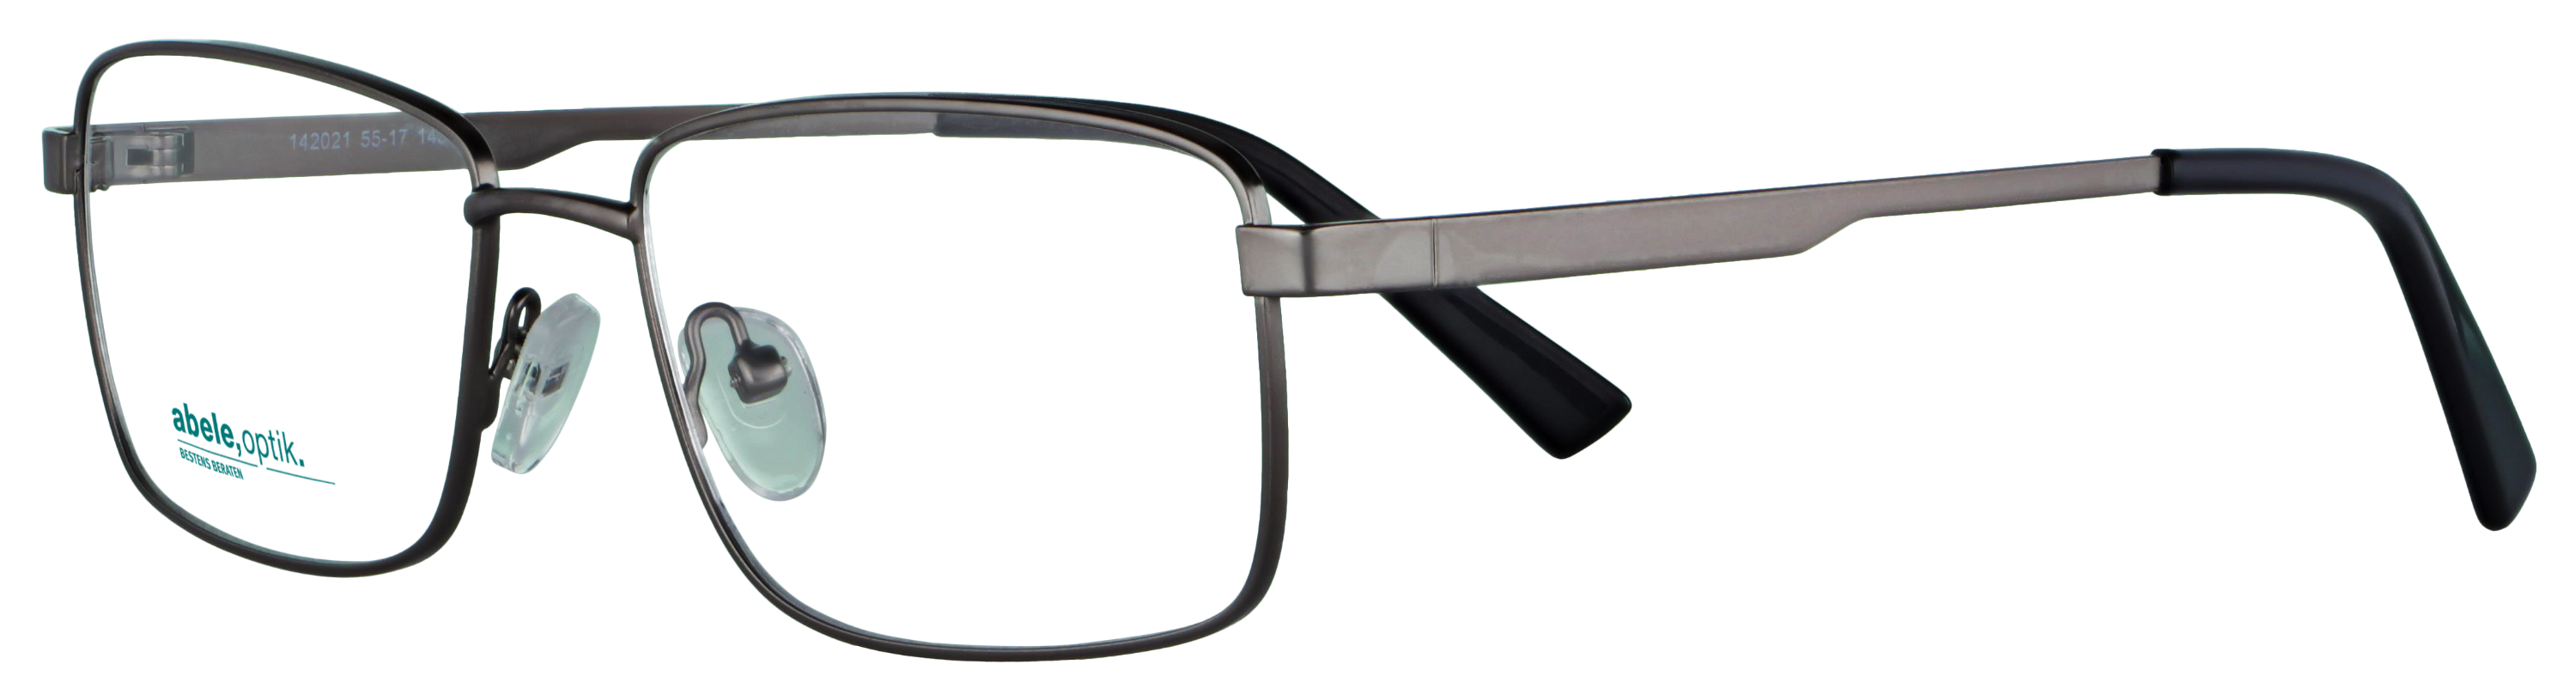 Das Bild zeigt die Korrektionsbrille 142021 von der Marke Abele Optik in gun matt.